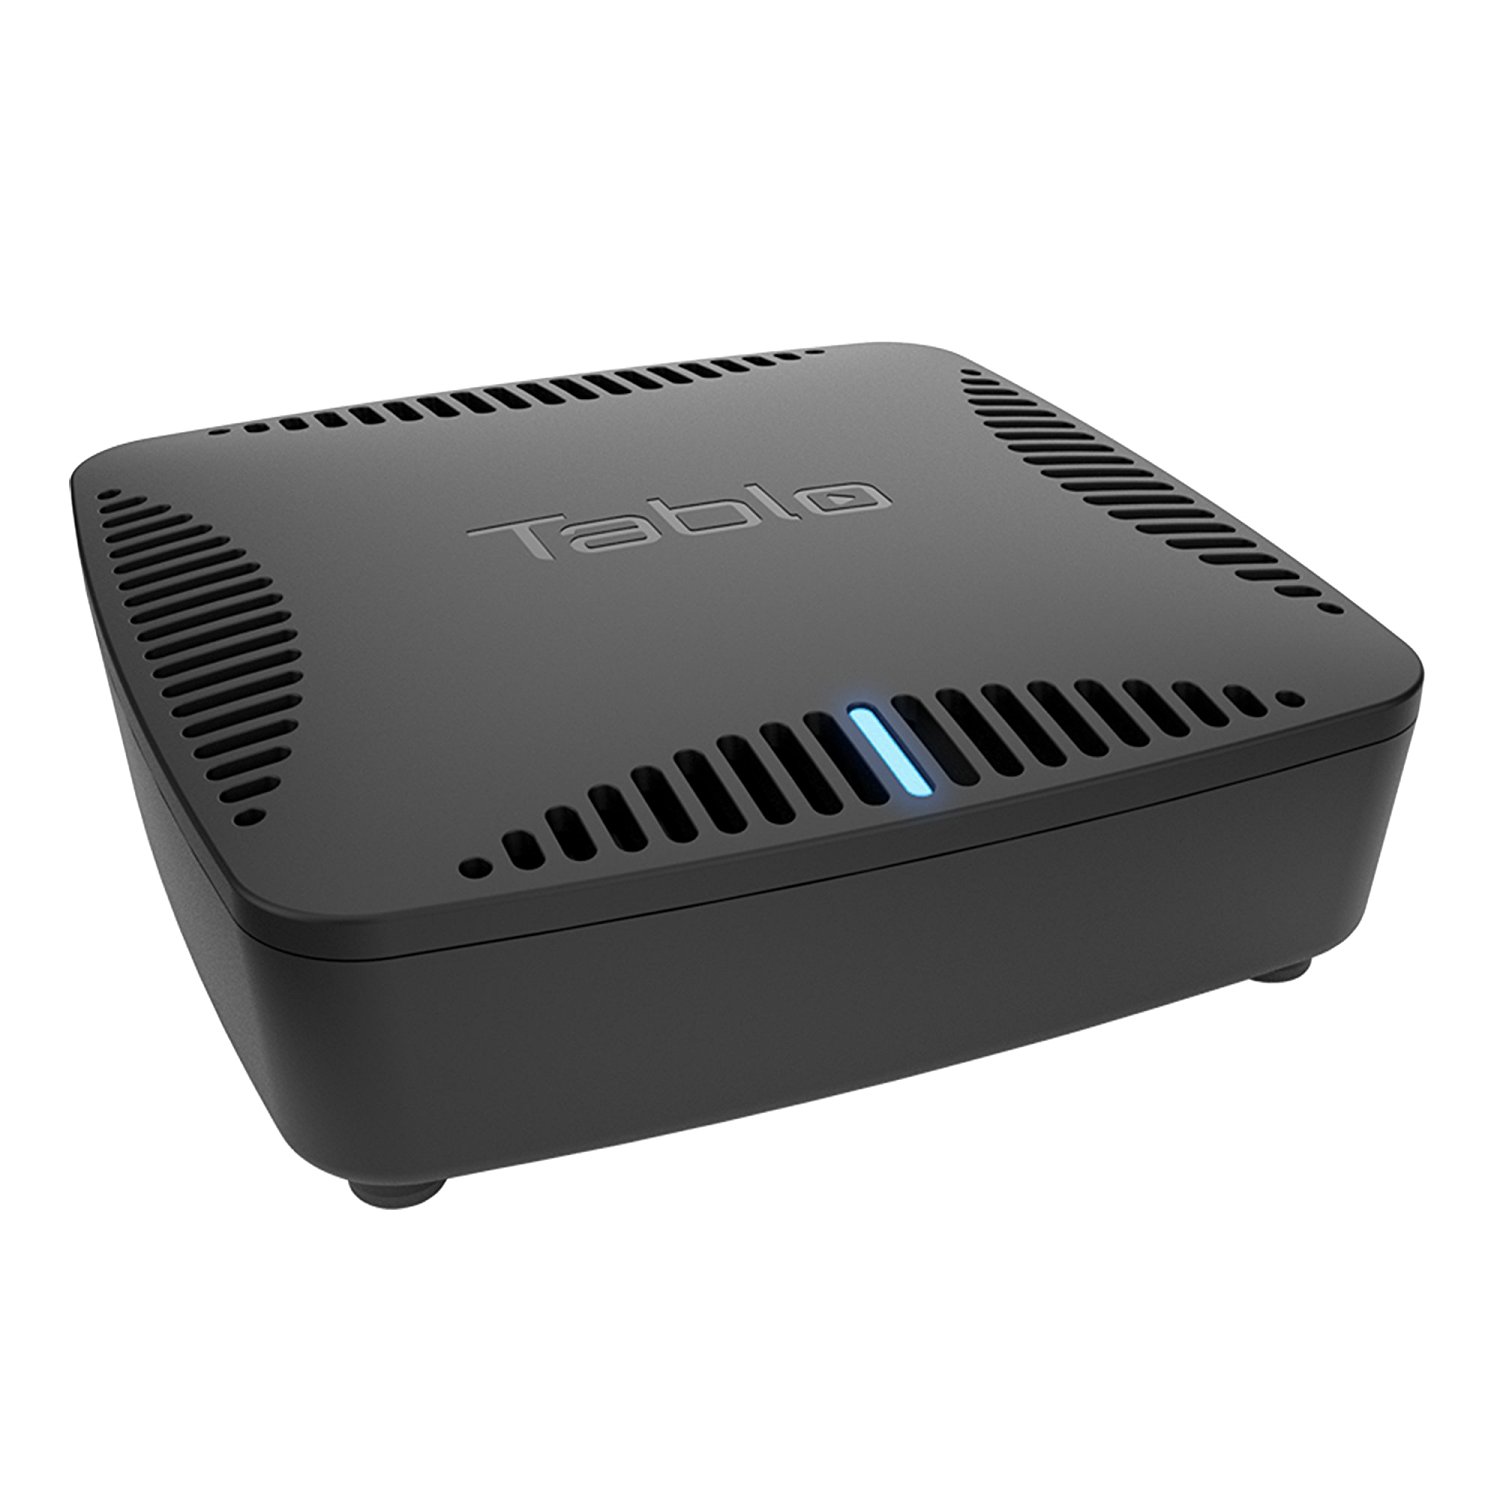 Tablo DVRs Add Support For 5.1 Surround Sound